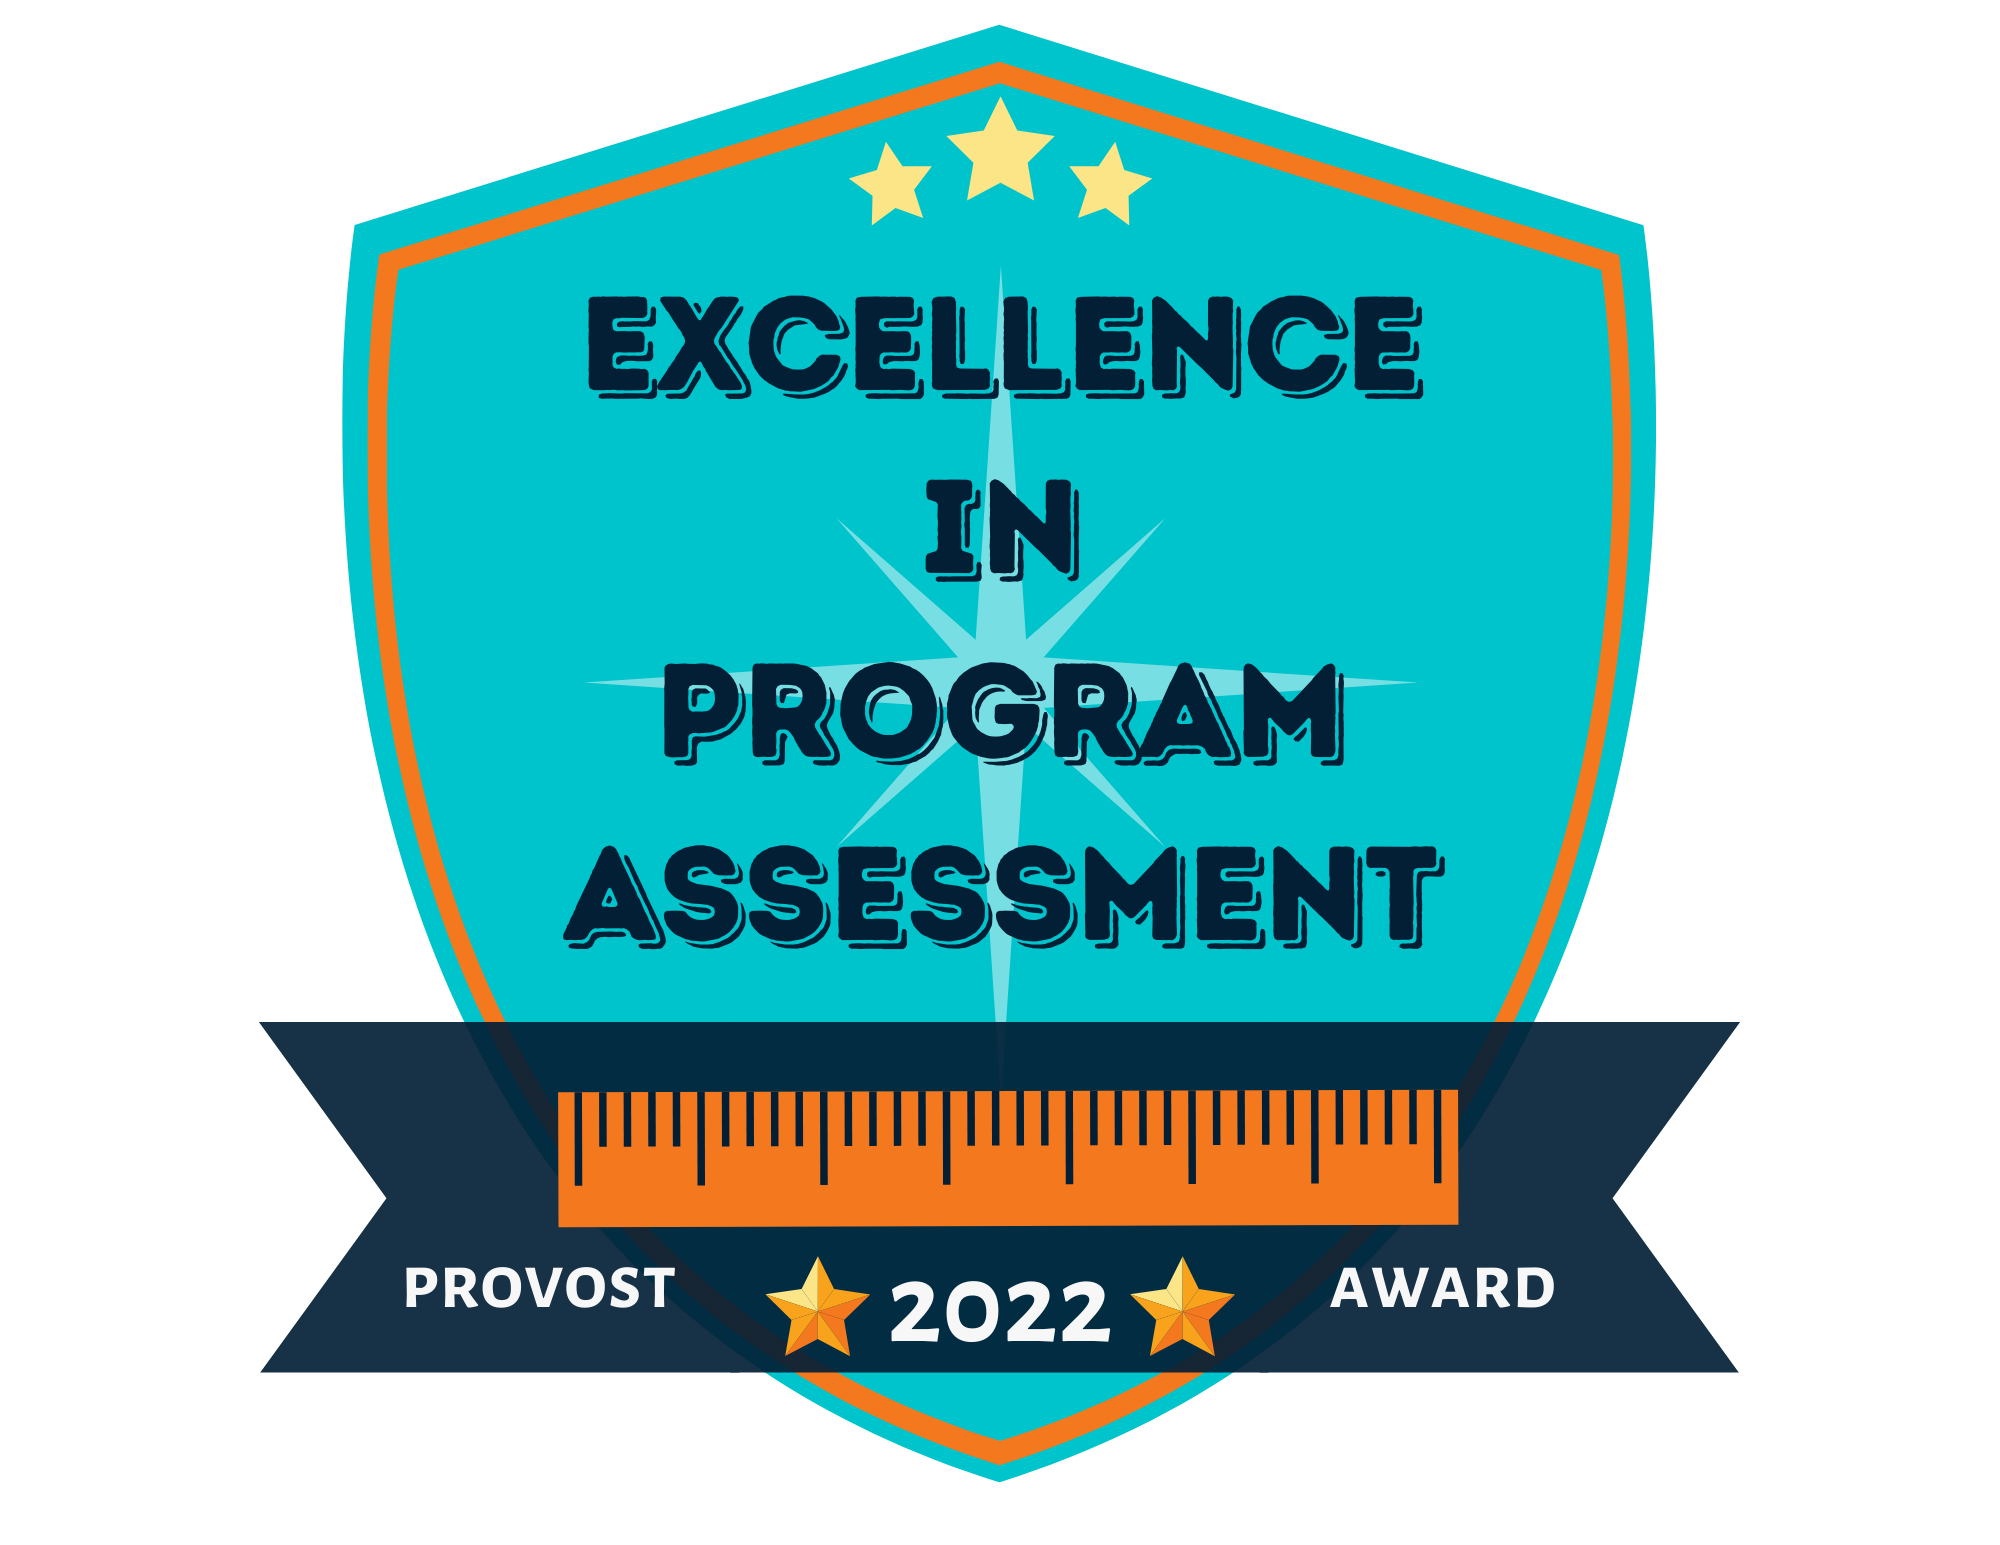 Excellence in Program Assessment 2022 Award